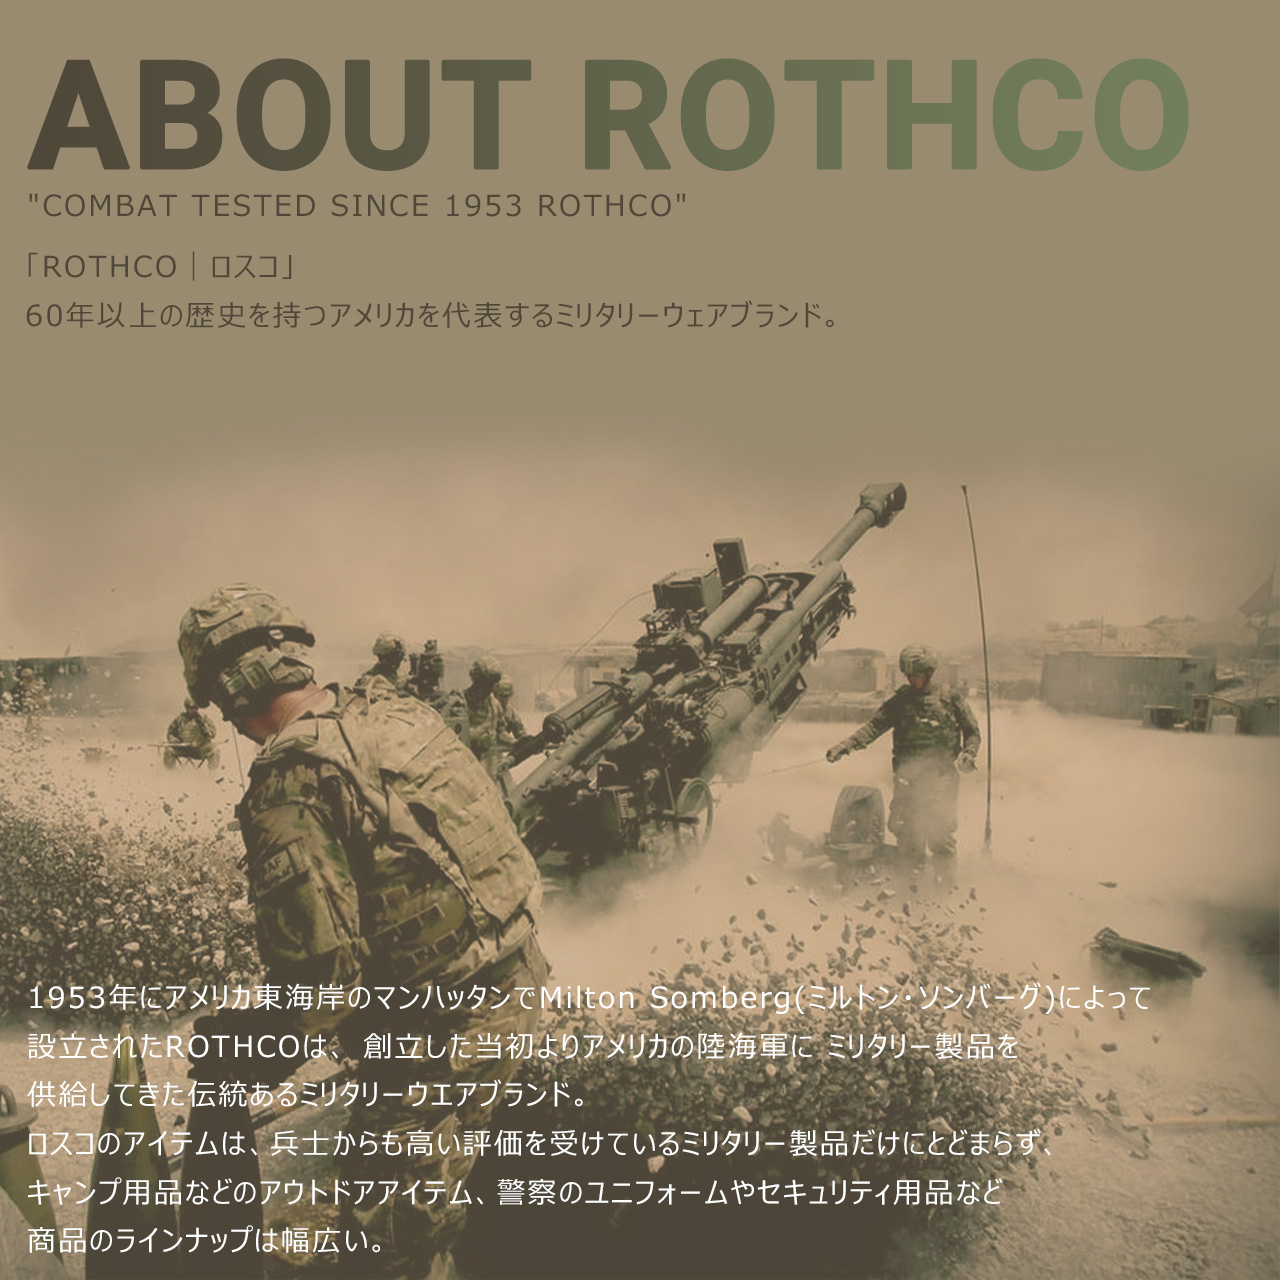 ROTHCO Rothco покрывало палантин мужской палантин большой размер проверка shu кружка вооруженные силы США милитари rothco-4537 USA модель [ почтовая доставка возможно ][COP]